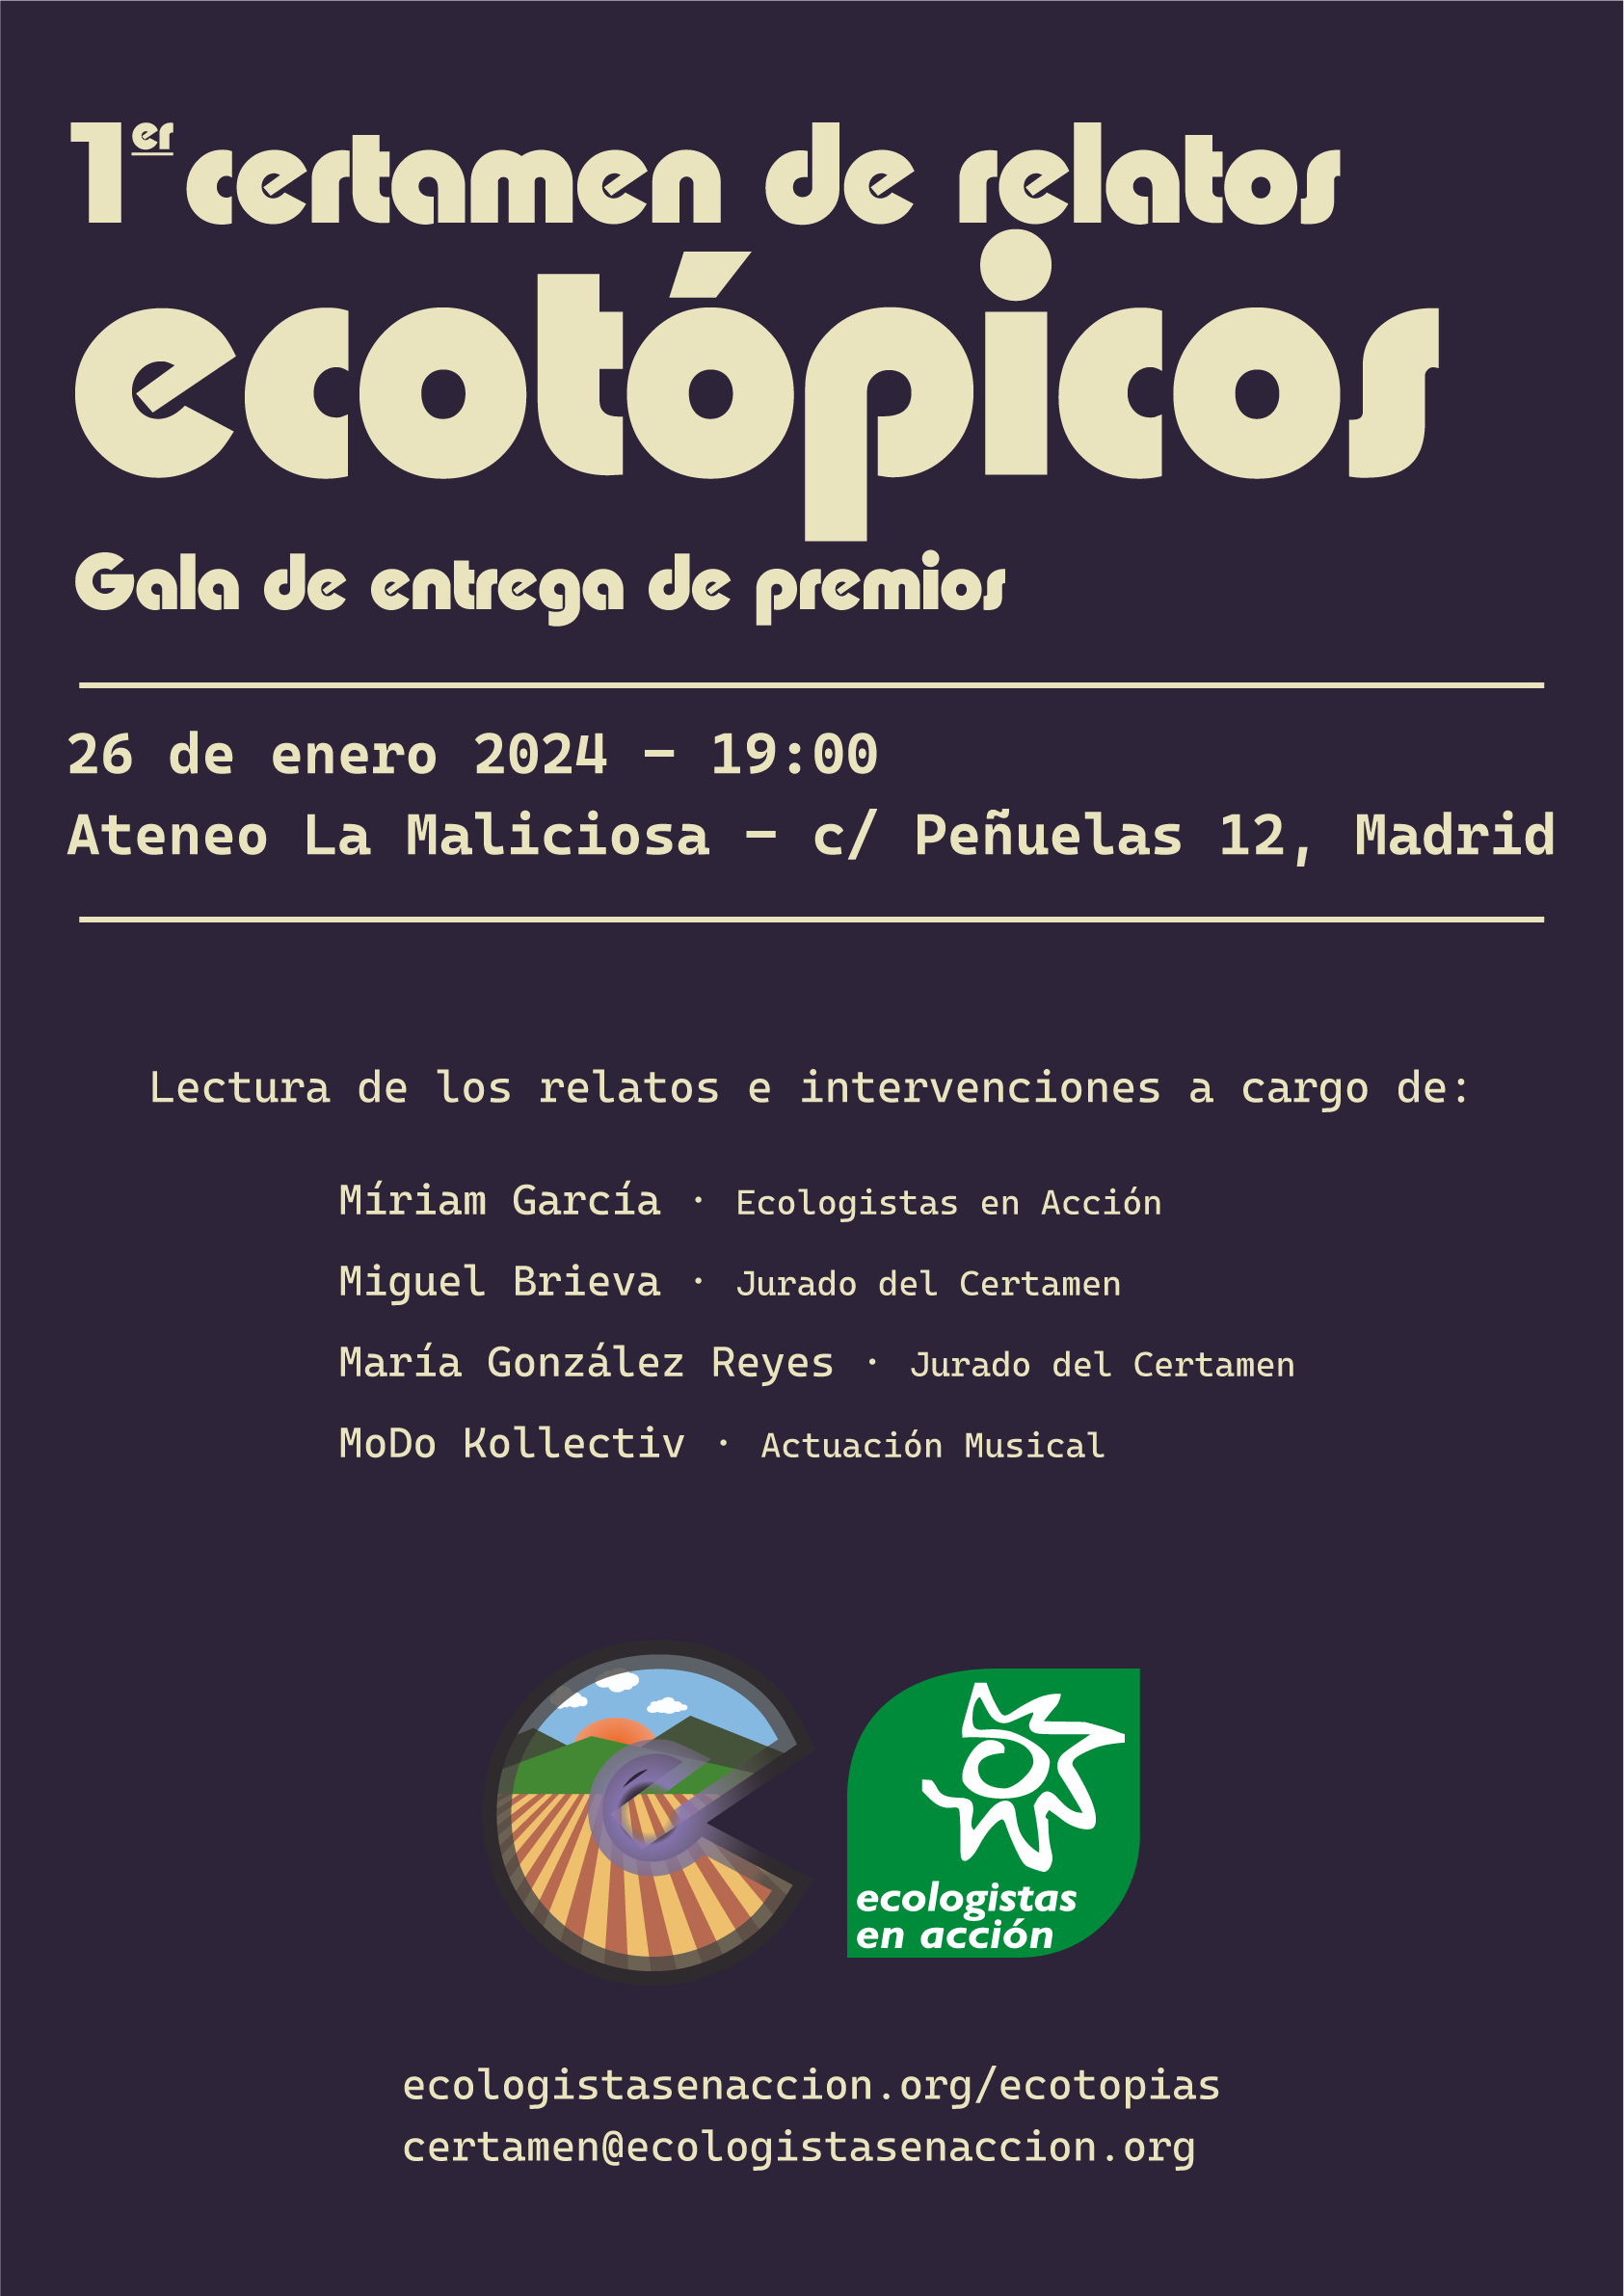 Gala de entrega de premios del I Certamen de Relatos Ecotópicos de Ecologistas en Acción